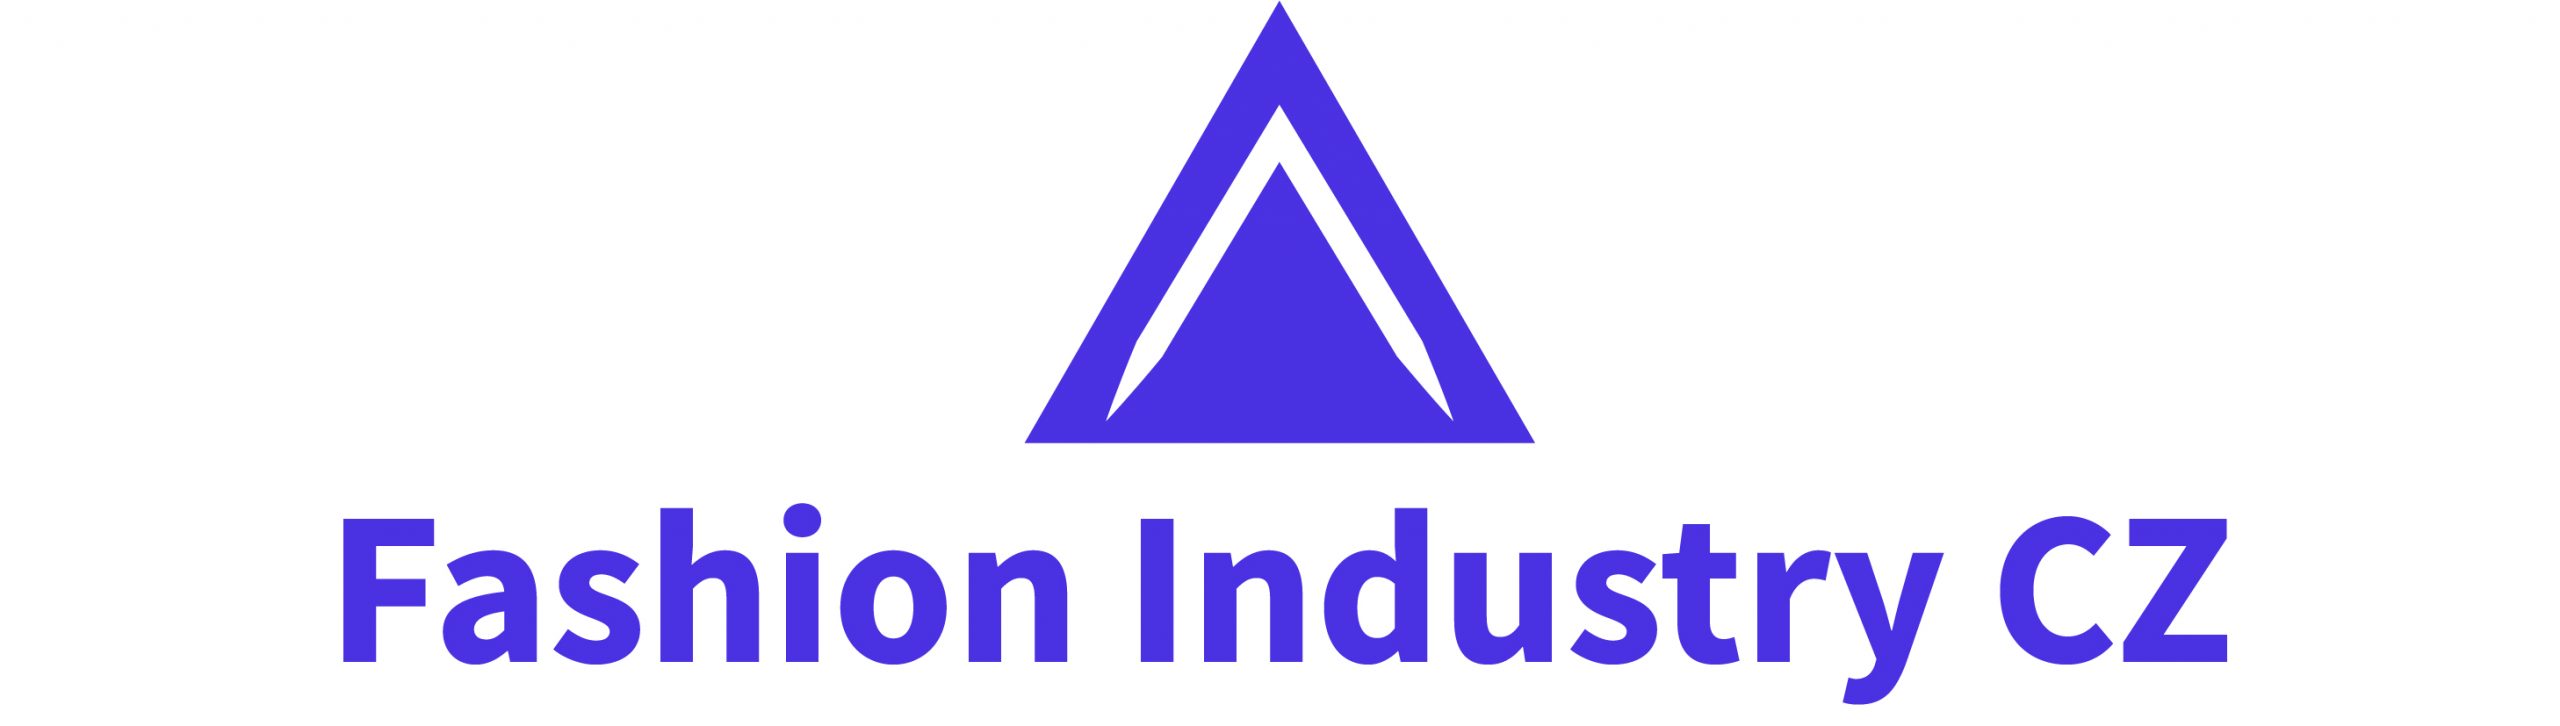 Fashion Industry CZ hlavní logo